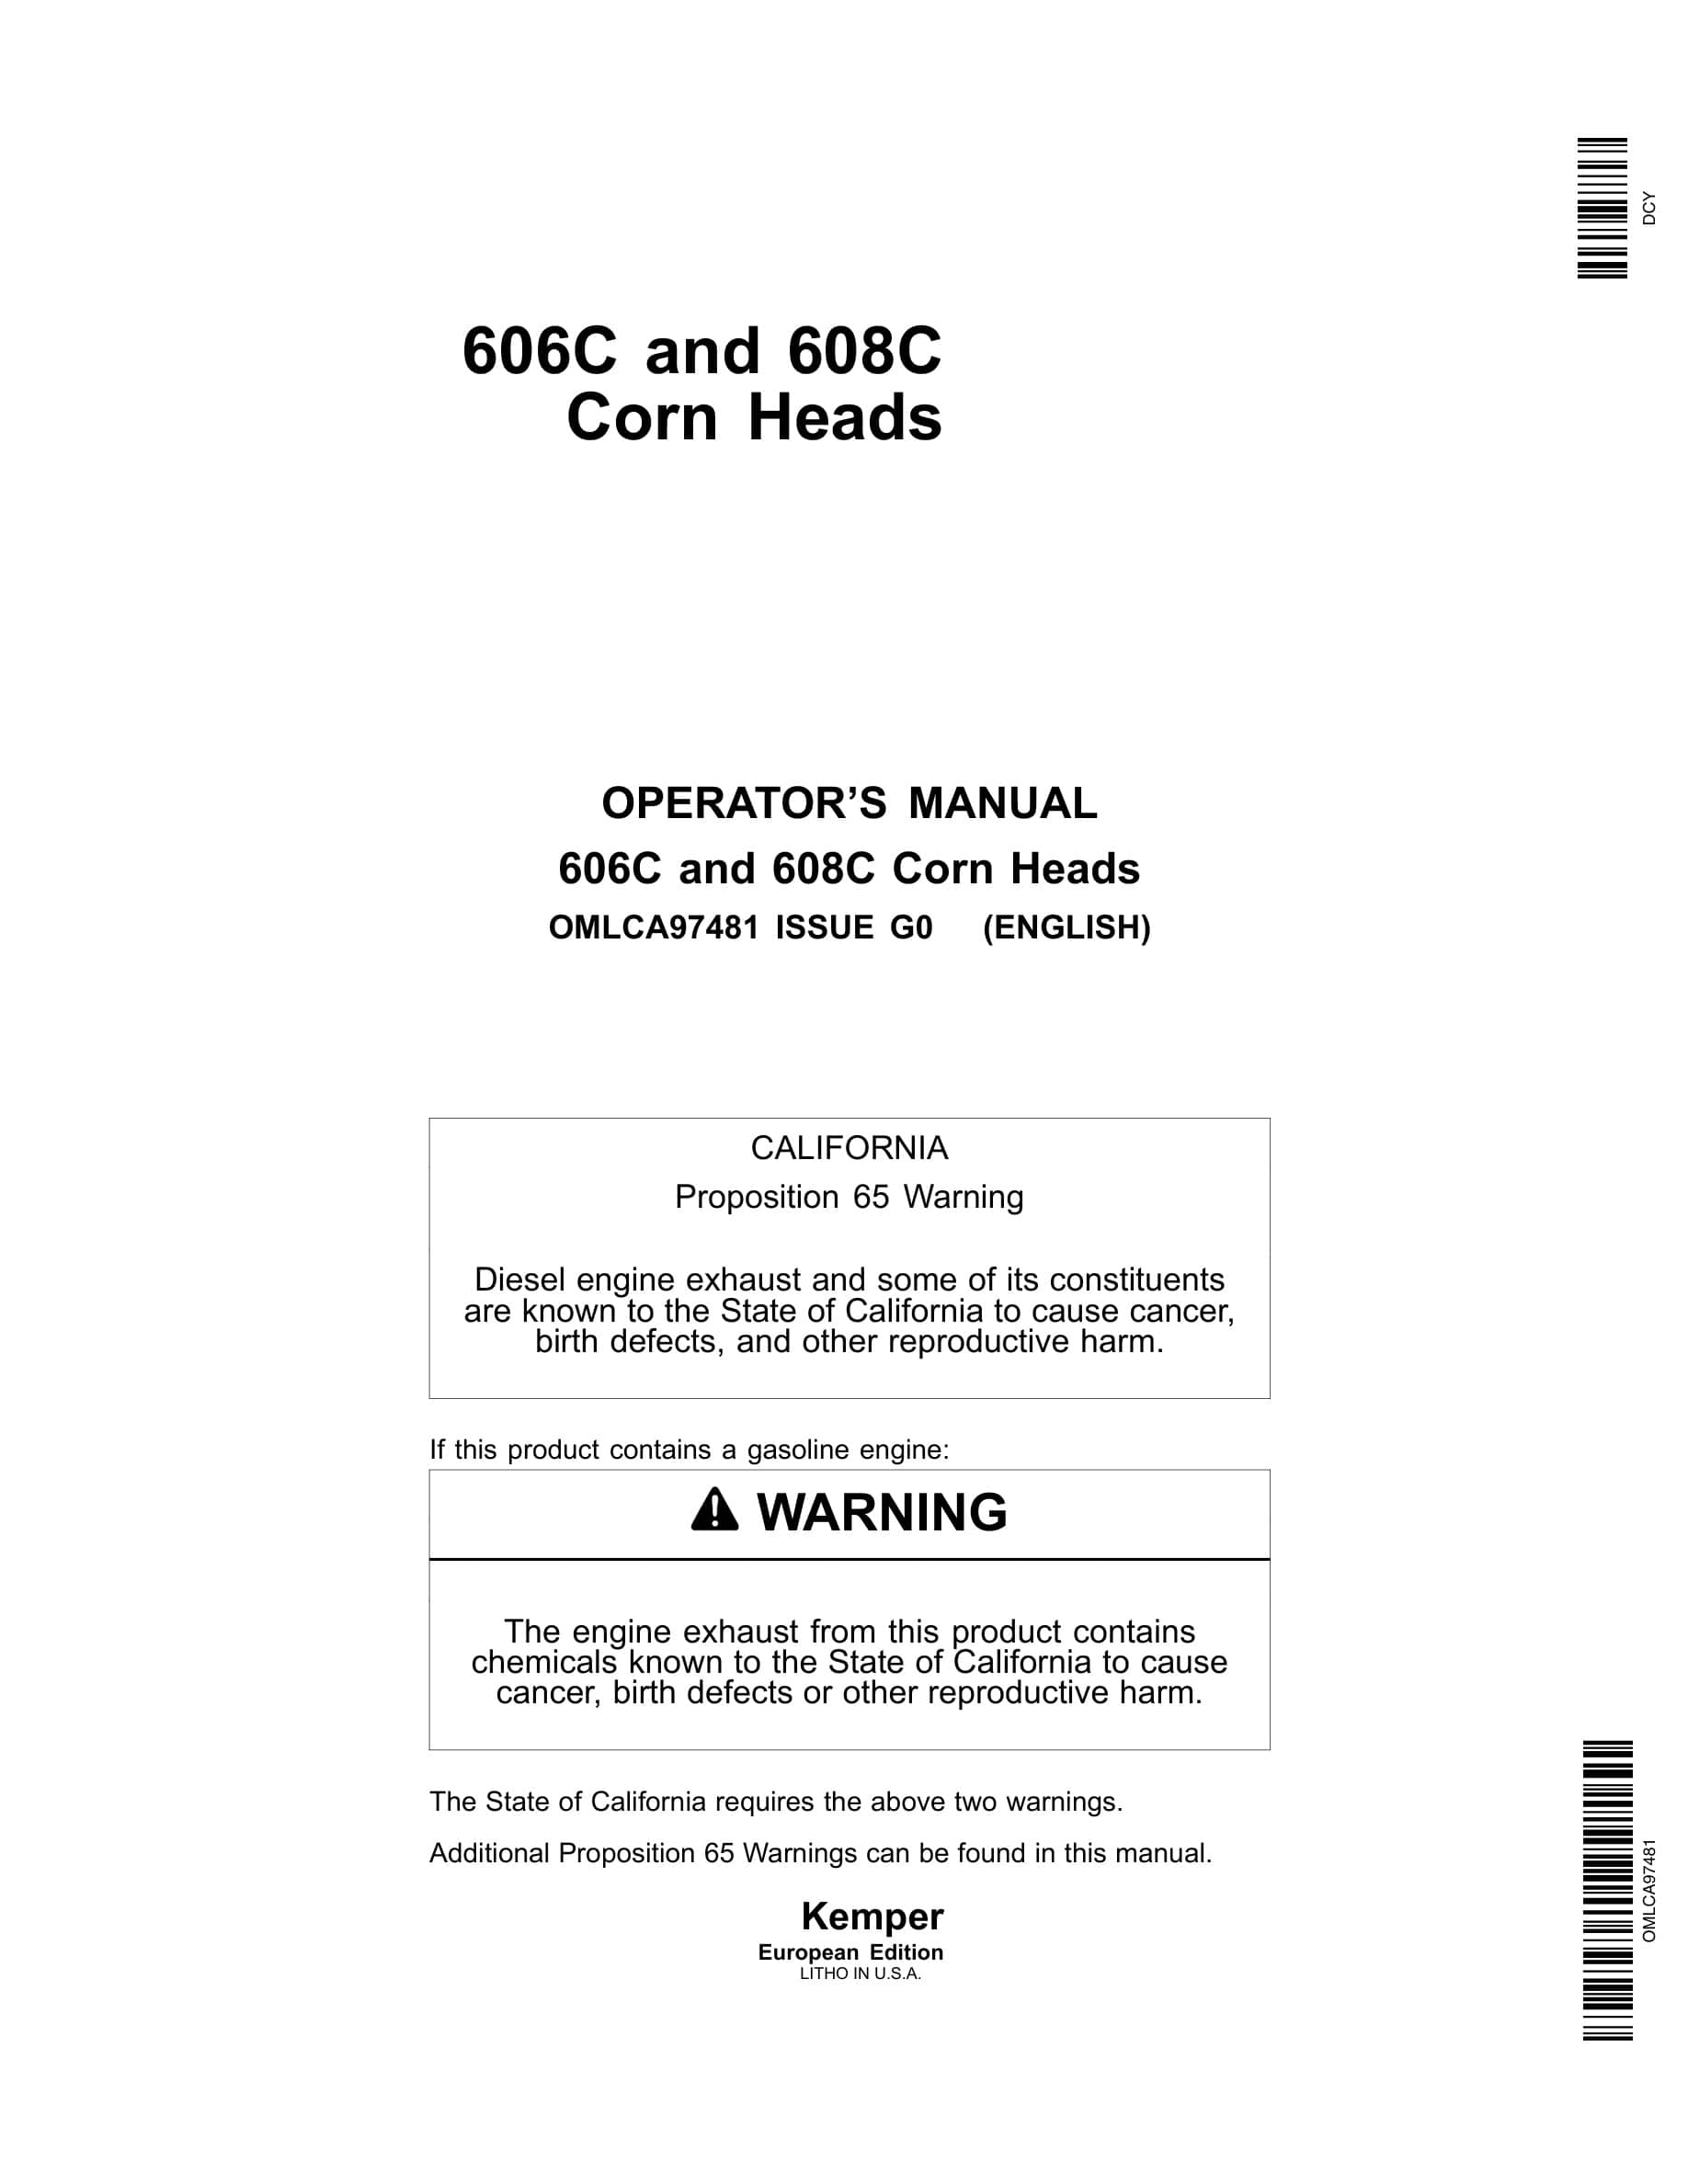 John Deere 606C and 608C Corn Heads Operator Manual OMLCA97481-1